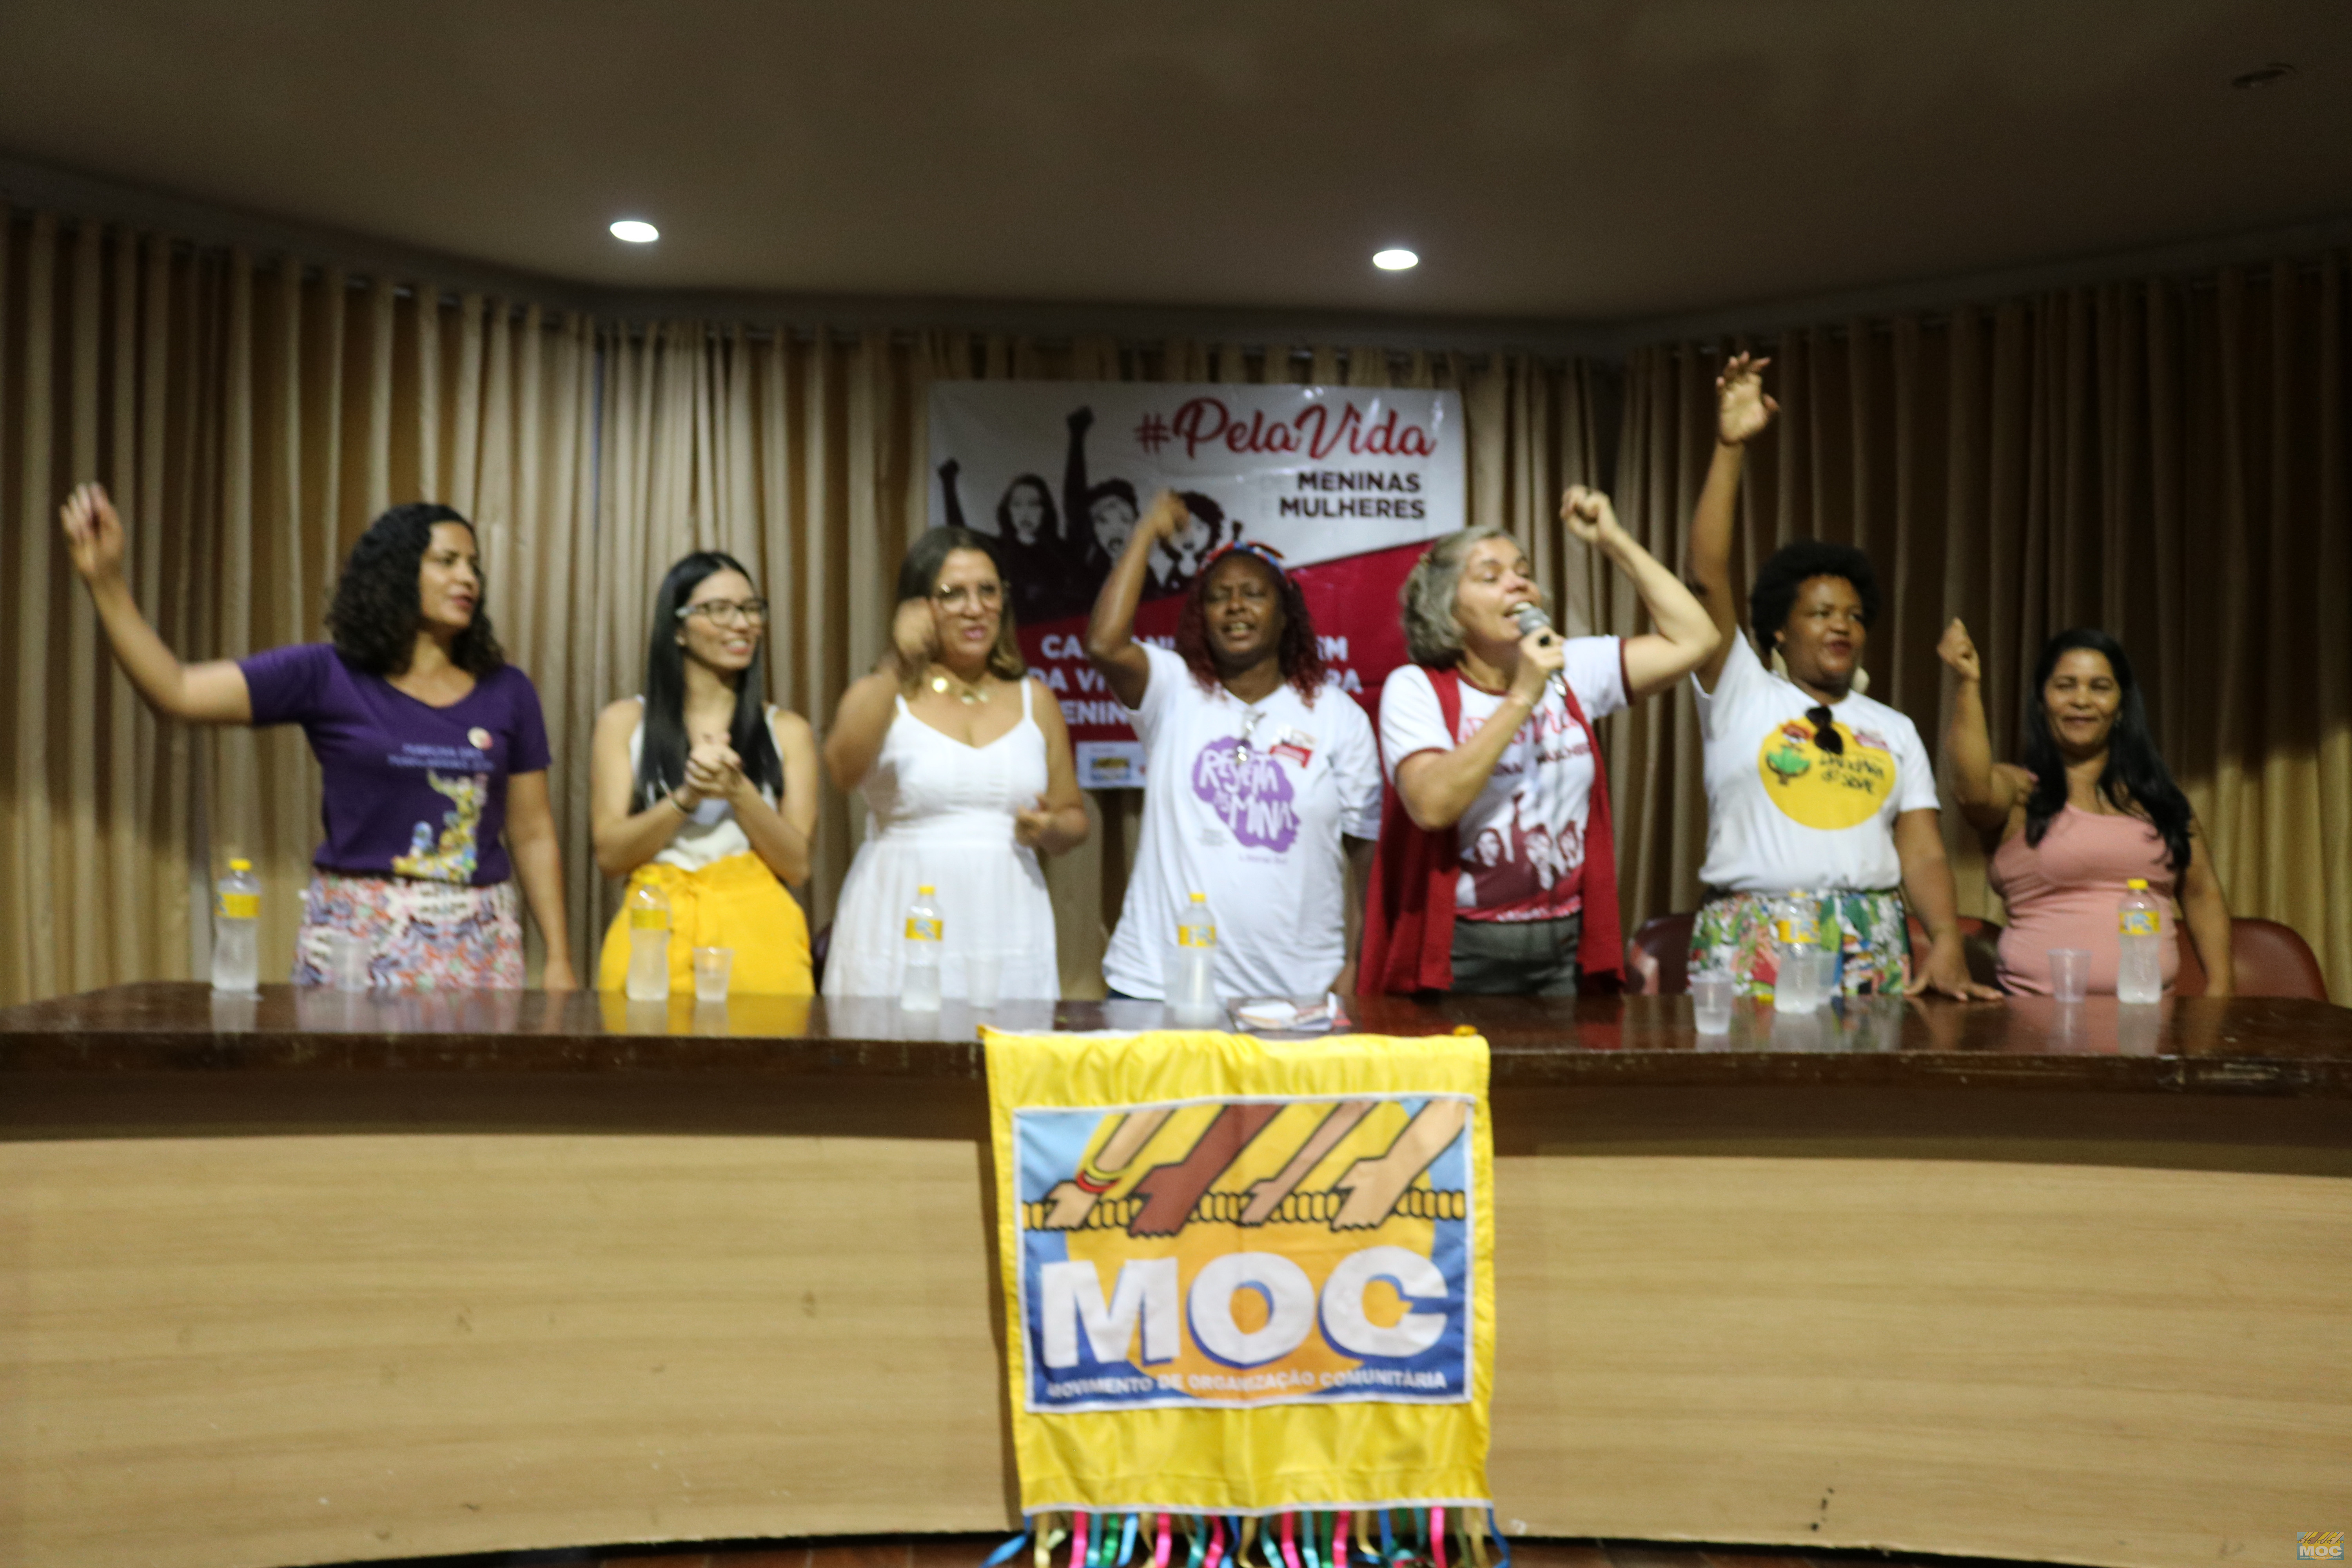 MOC lança campanha de enfretamento a violência: #PelaVida – De Meninas e Mulheres